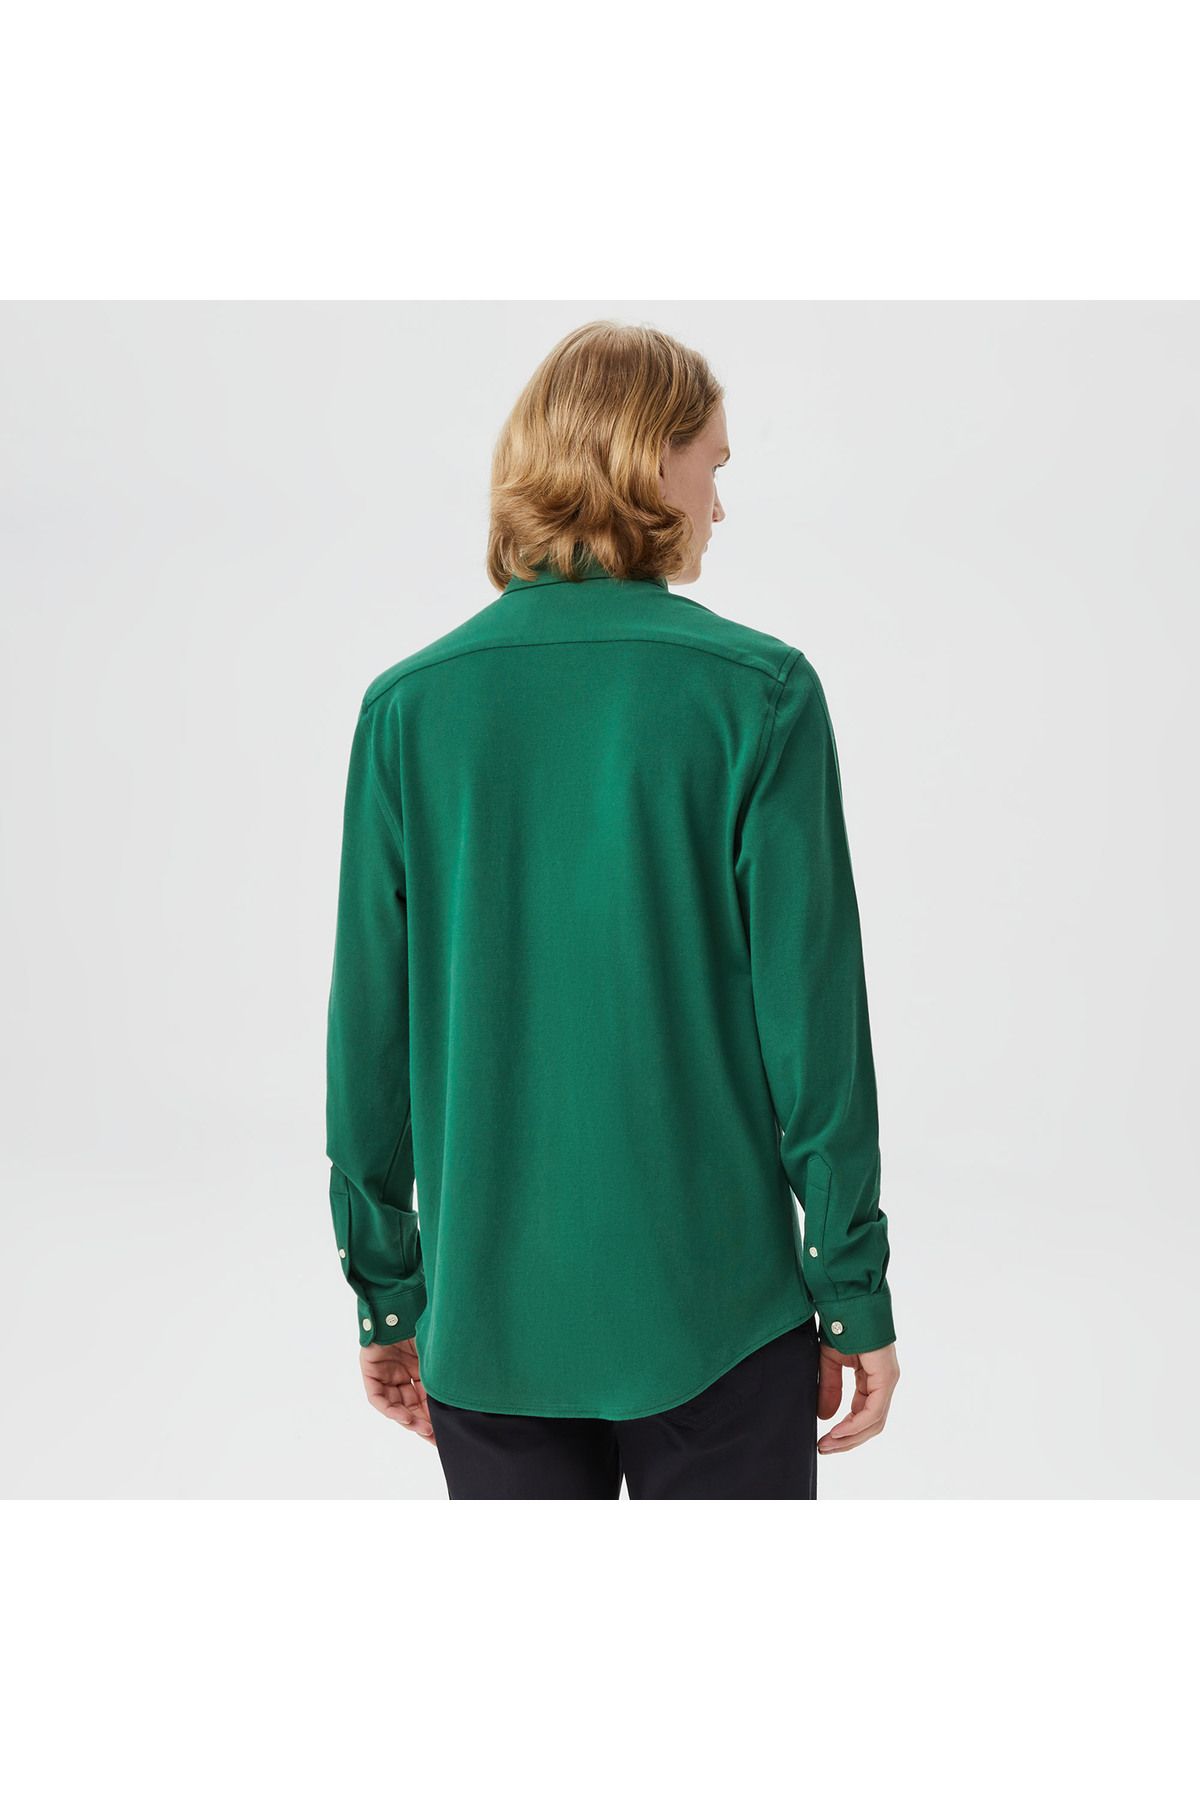 Lacoste پیراهن سبز باریک مردانه